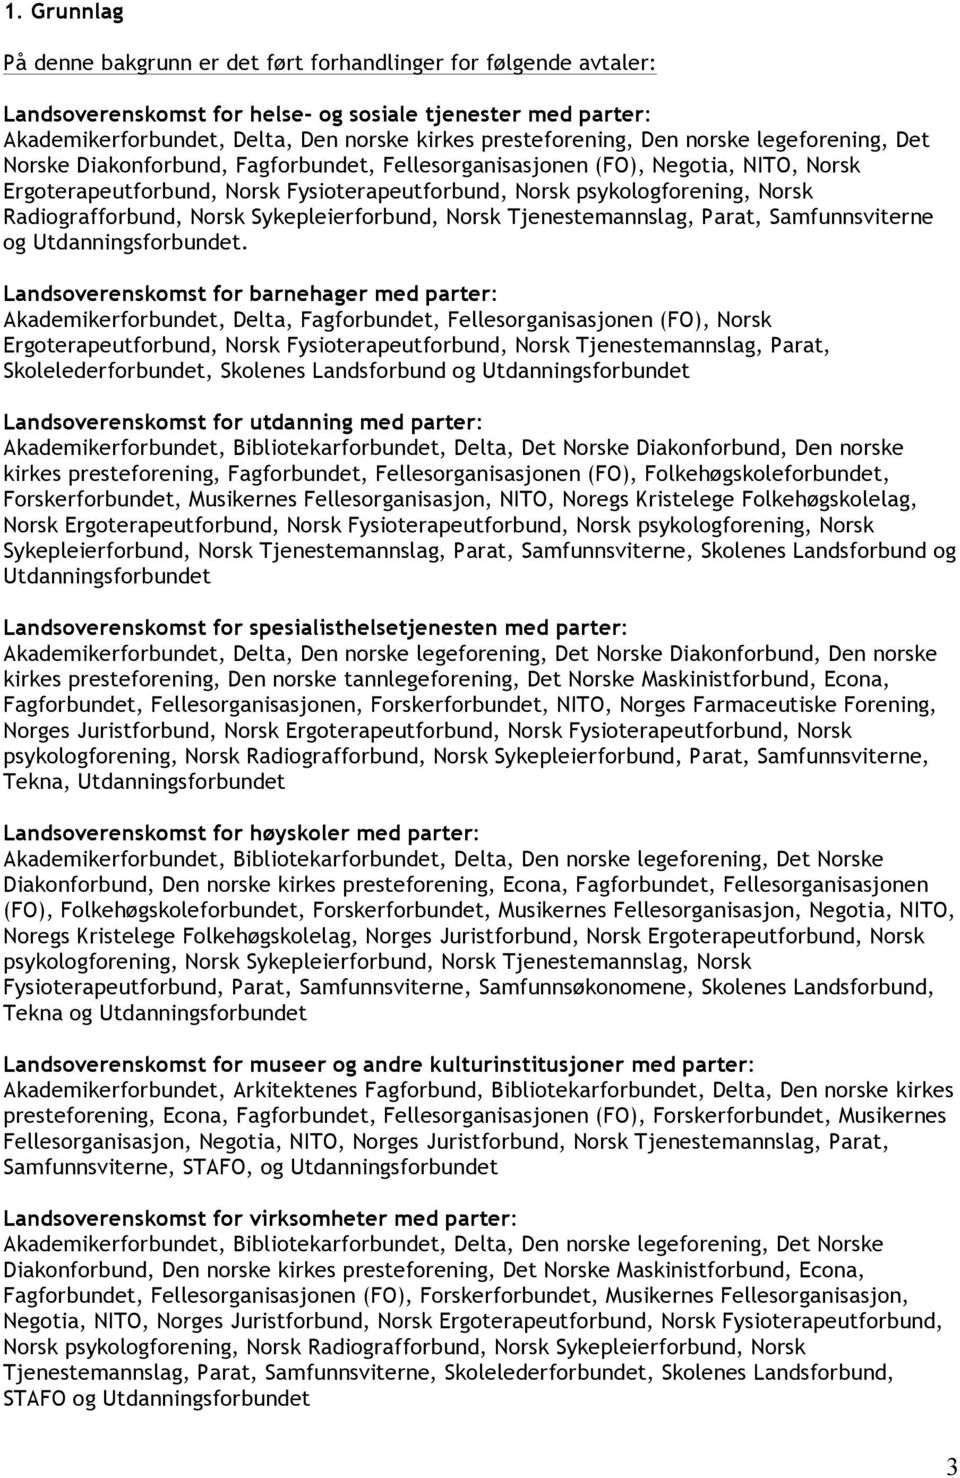 psykologforening, Norsk Radiografforbund, Norsk Sykepleierforbund, Norsk Tjenestemannslag, Parat, Samfunnsviterne og Utdanningsforbundet.